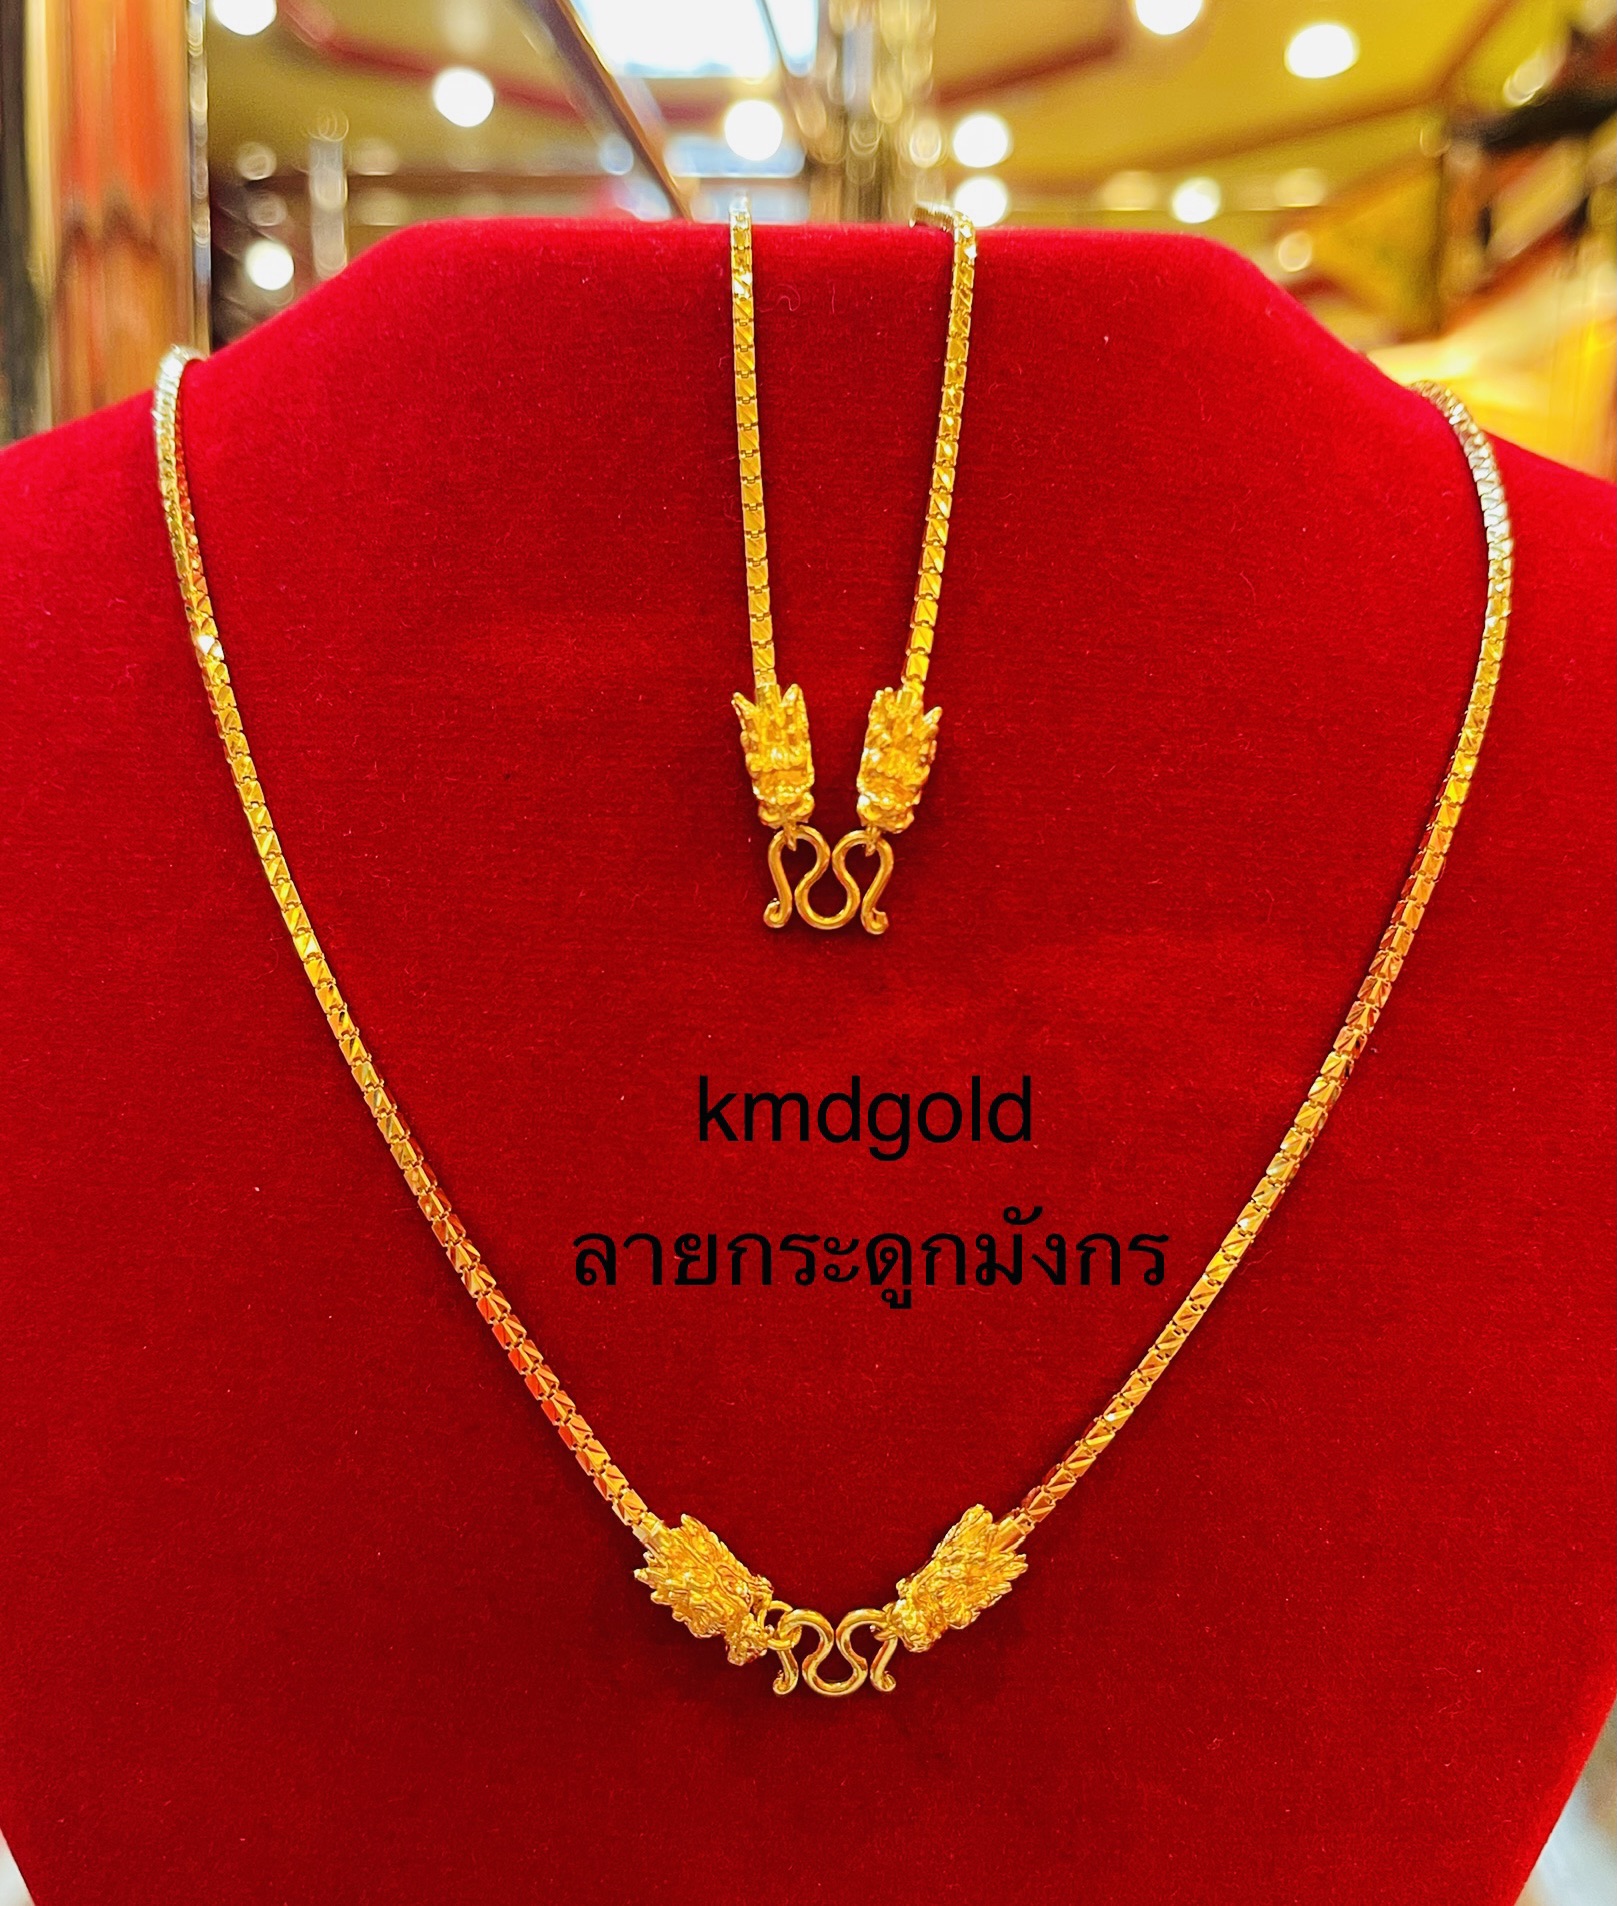 KMDGold สร้อยคอทอง2สลึง ลายกระดูกมังกร สินค้าทองแท้ พร้อมใบรับประกัน